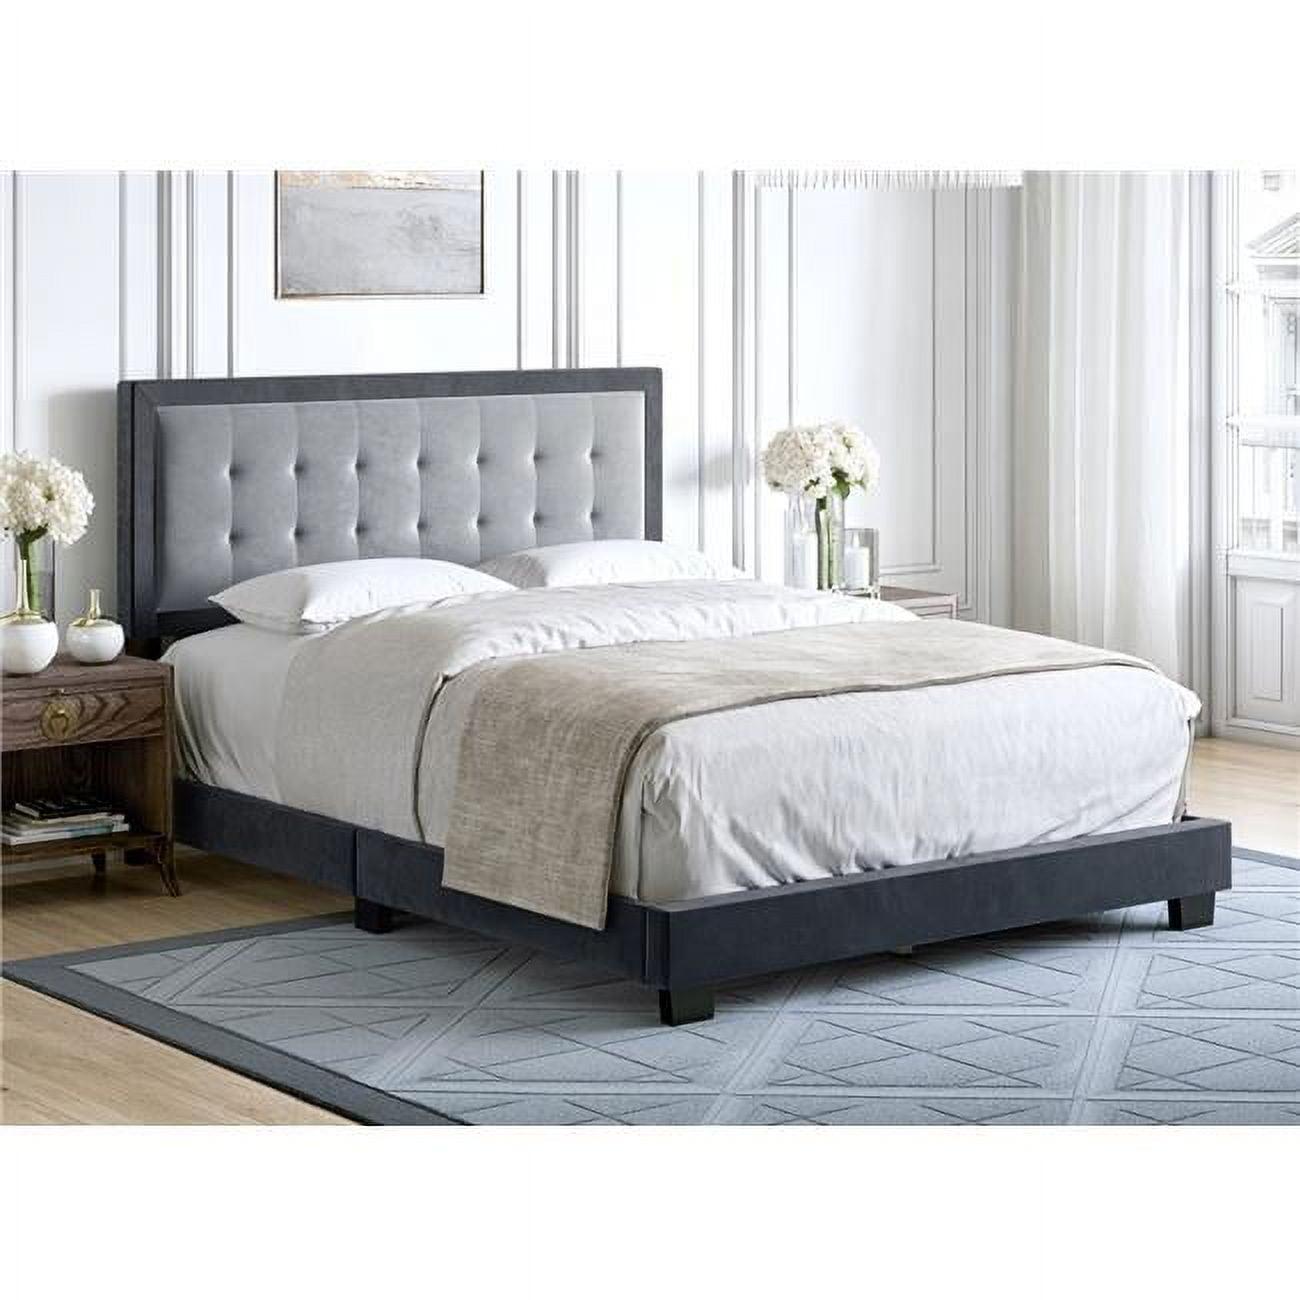 Elegant Full/Double Velvet Upholstered Platform Bed with Tufted Headboard